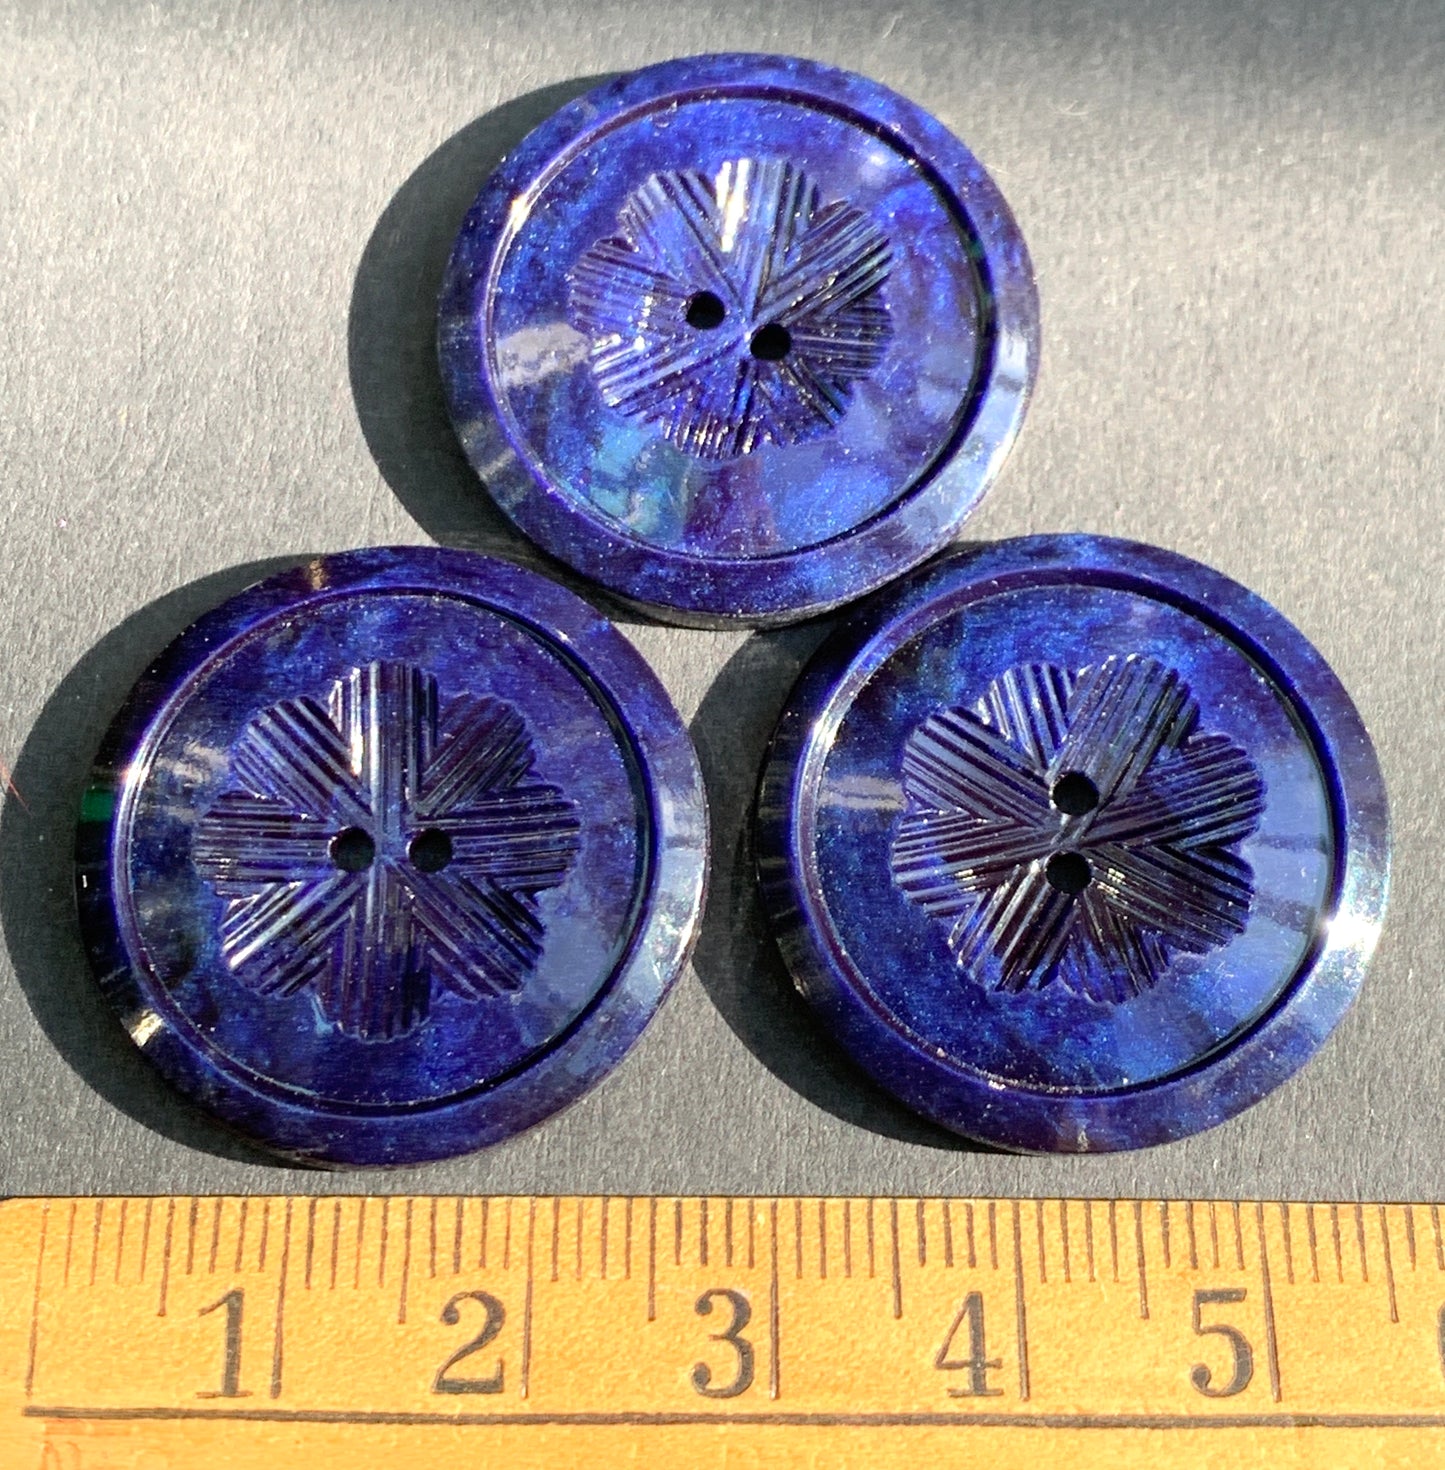 1 Midnight Blue Starburst 2.8cm Vintage Buttons